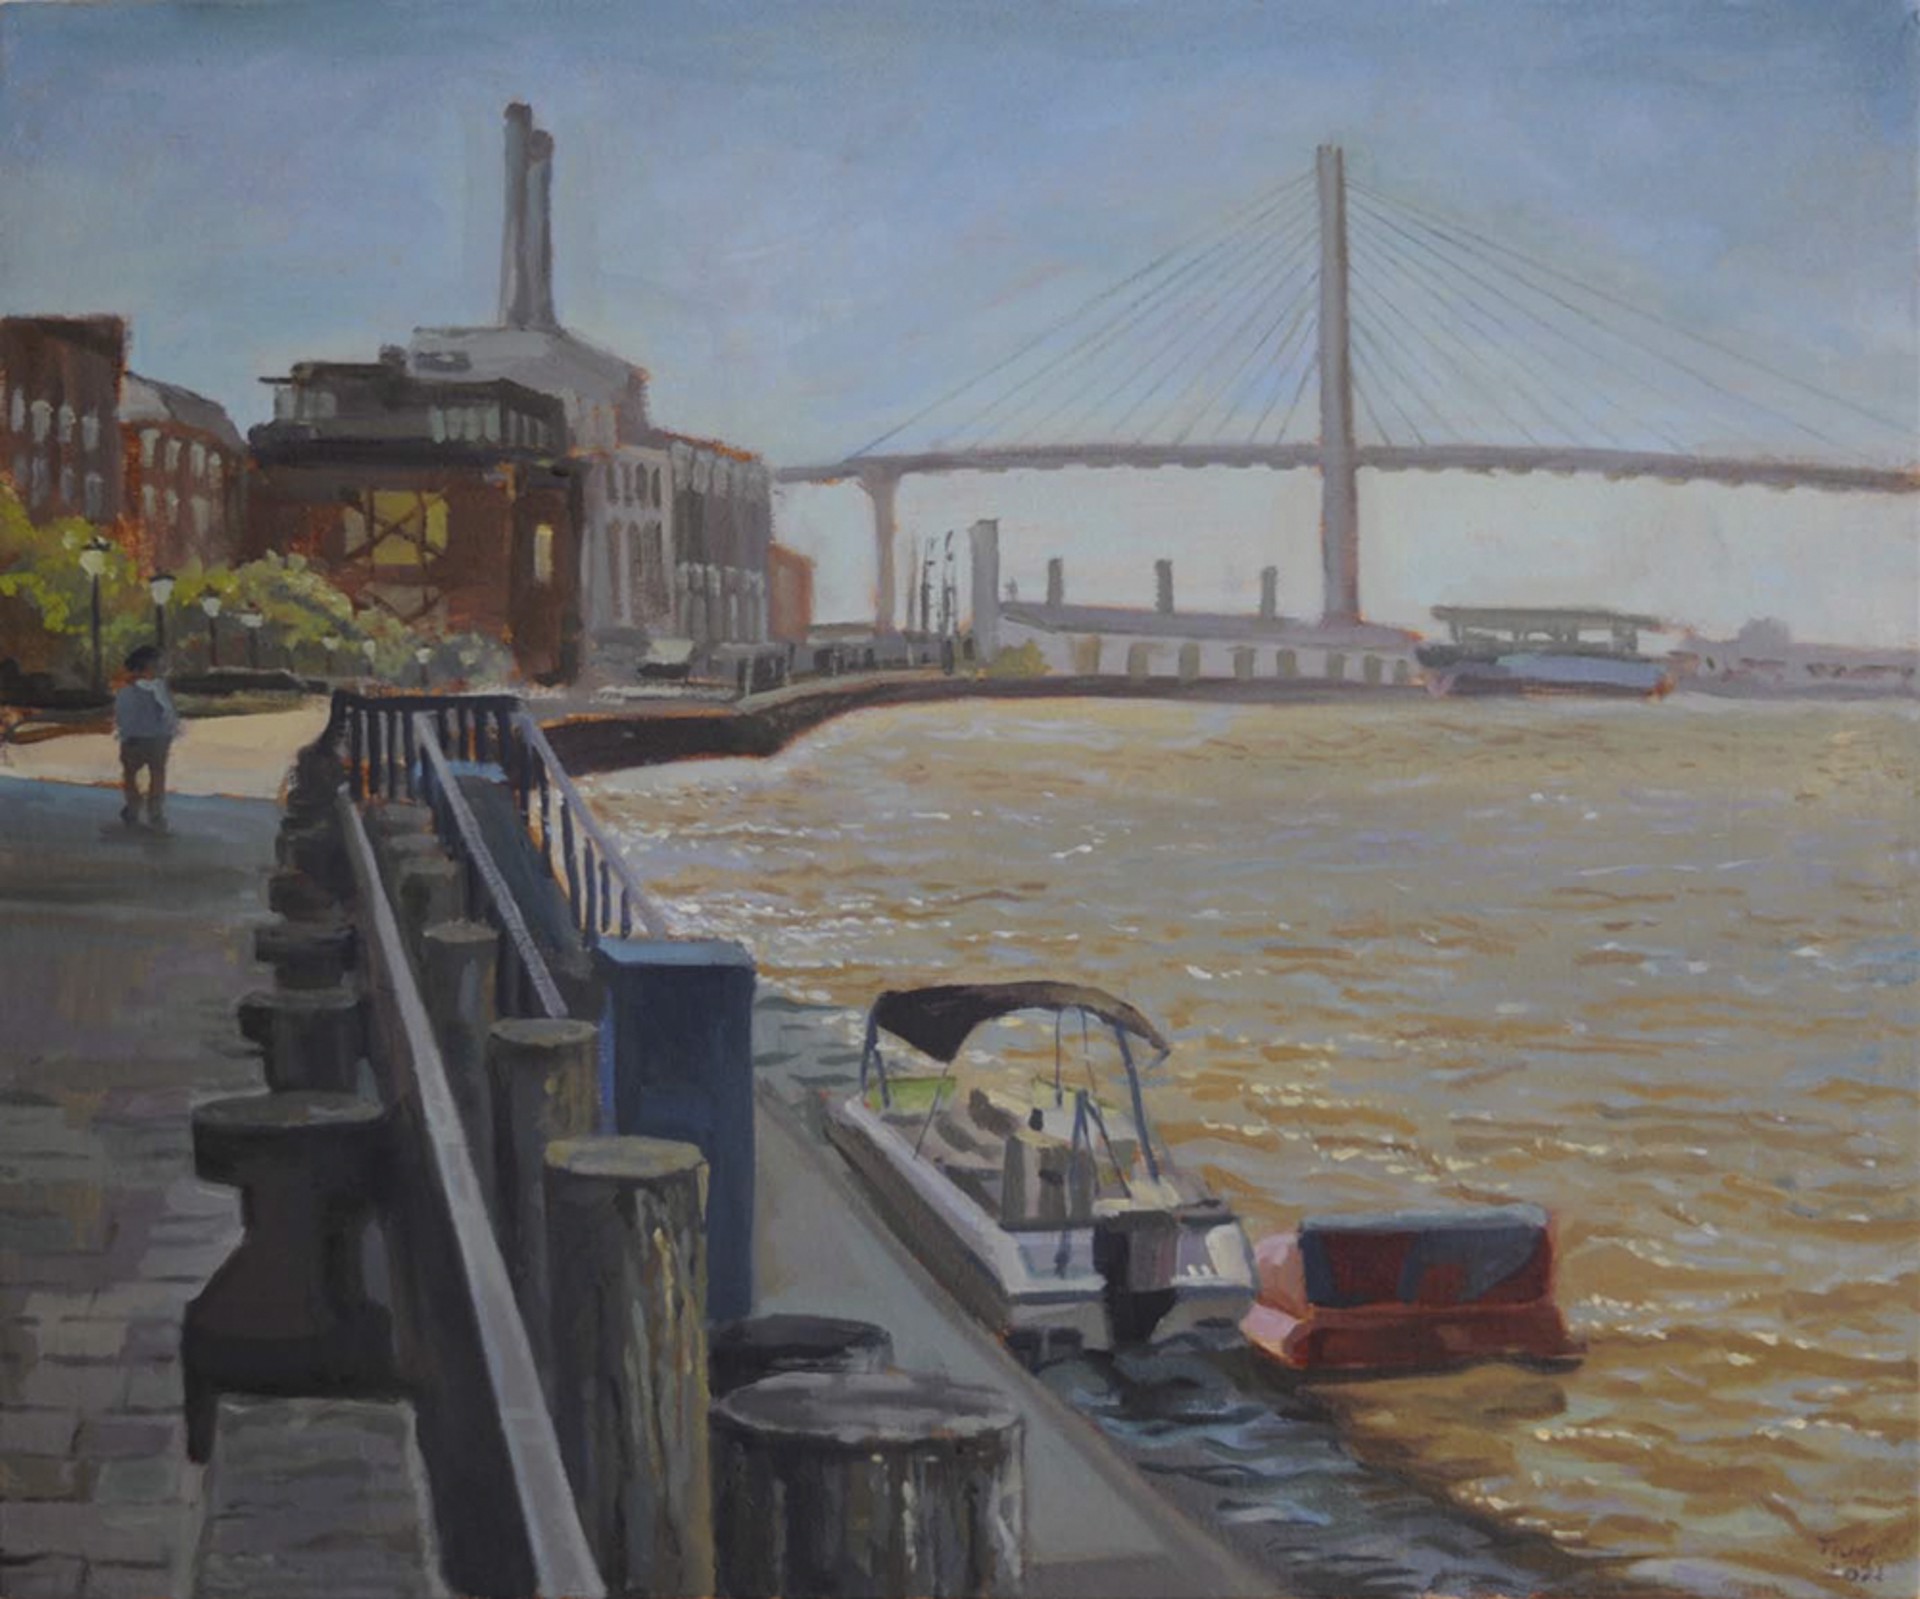 Savannah River Street by Ziyue Tang